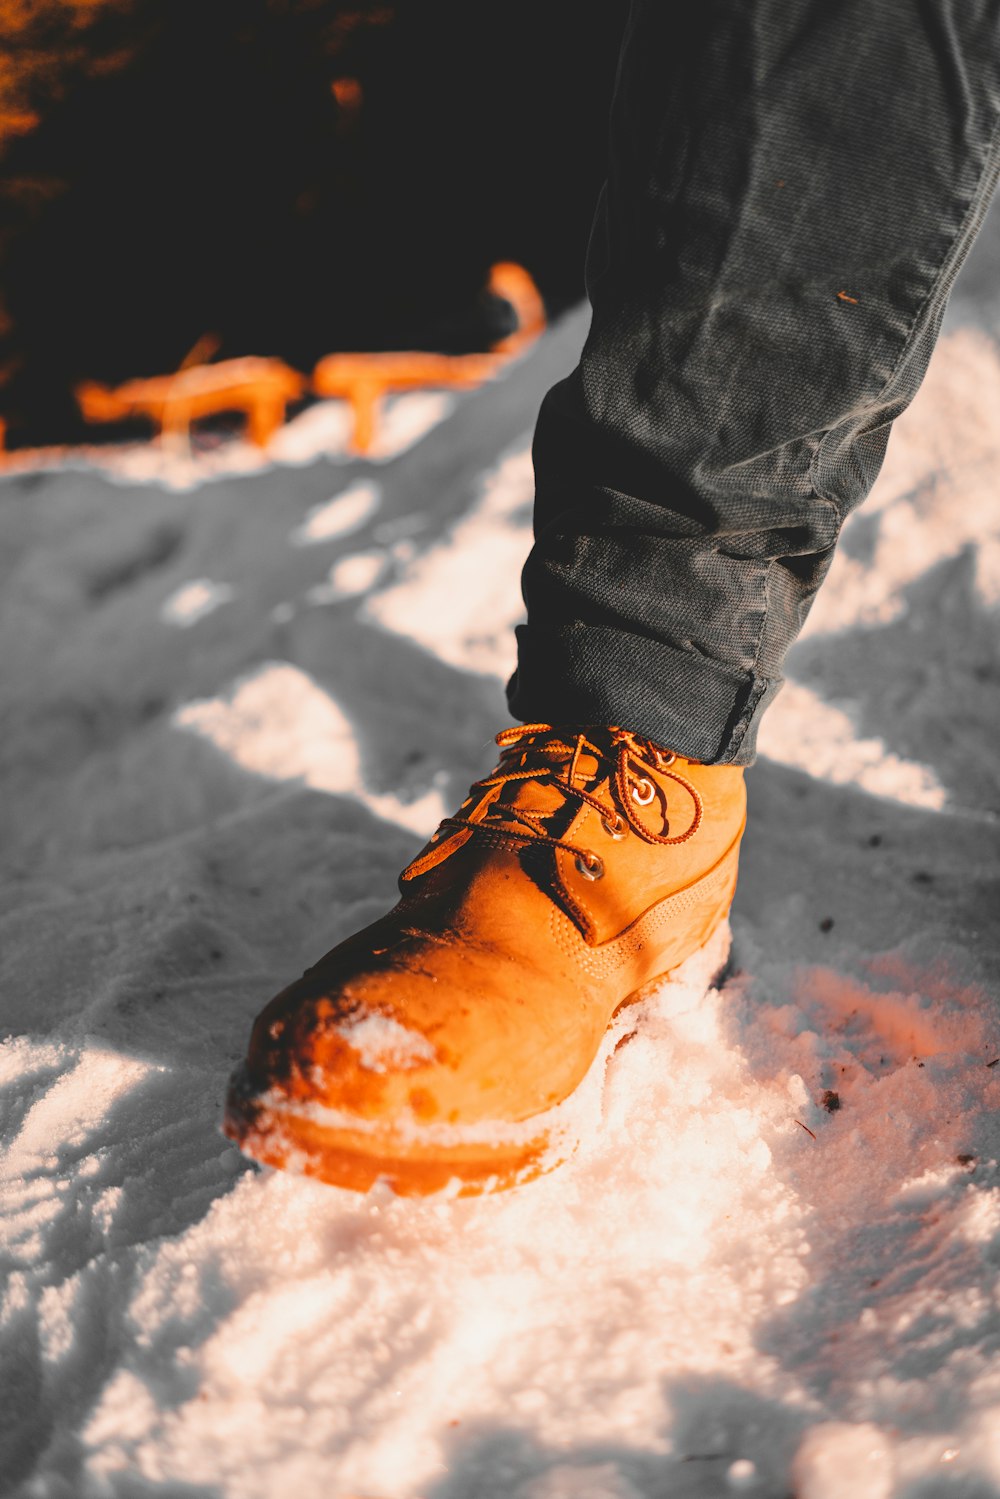 Una persona in piedi nella neve che indossa un paio di scarpe arancioni